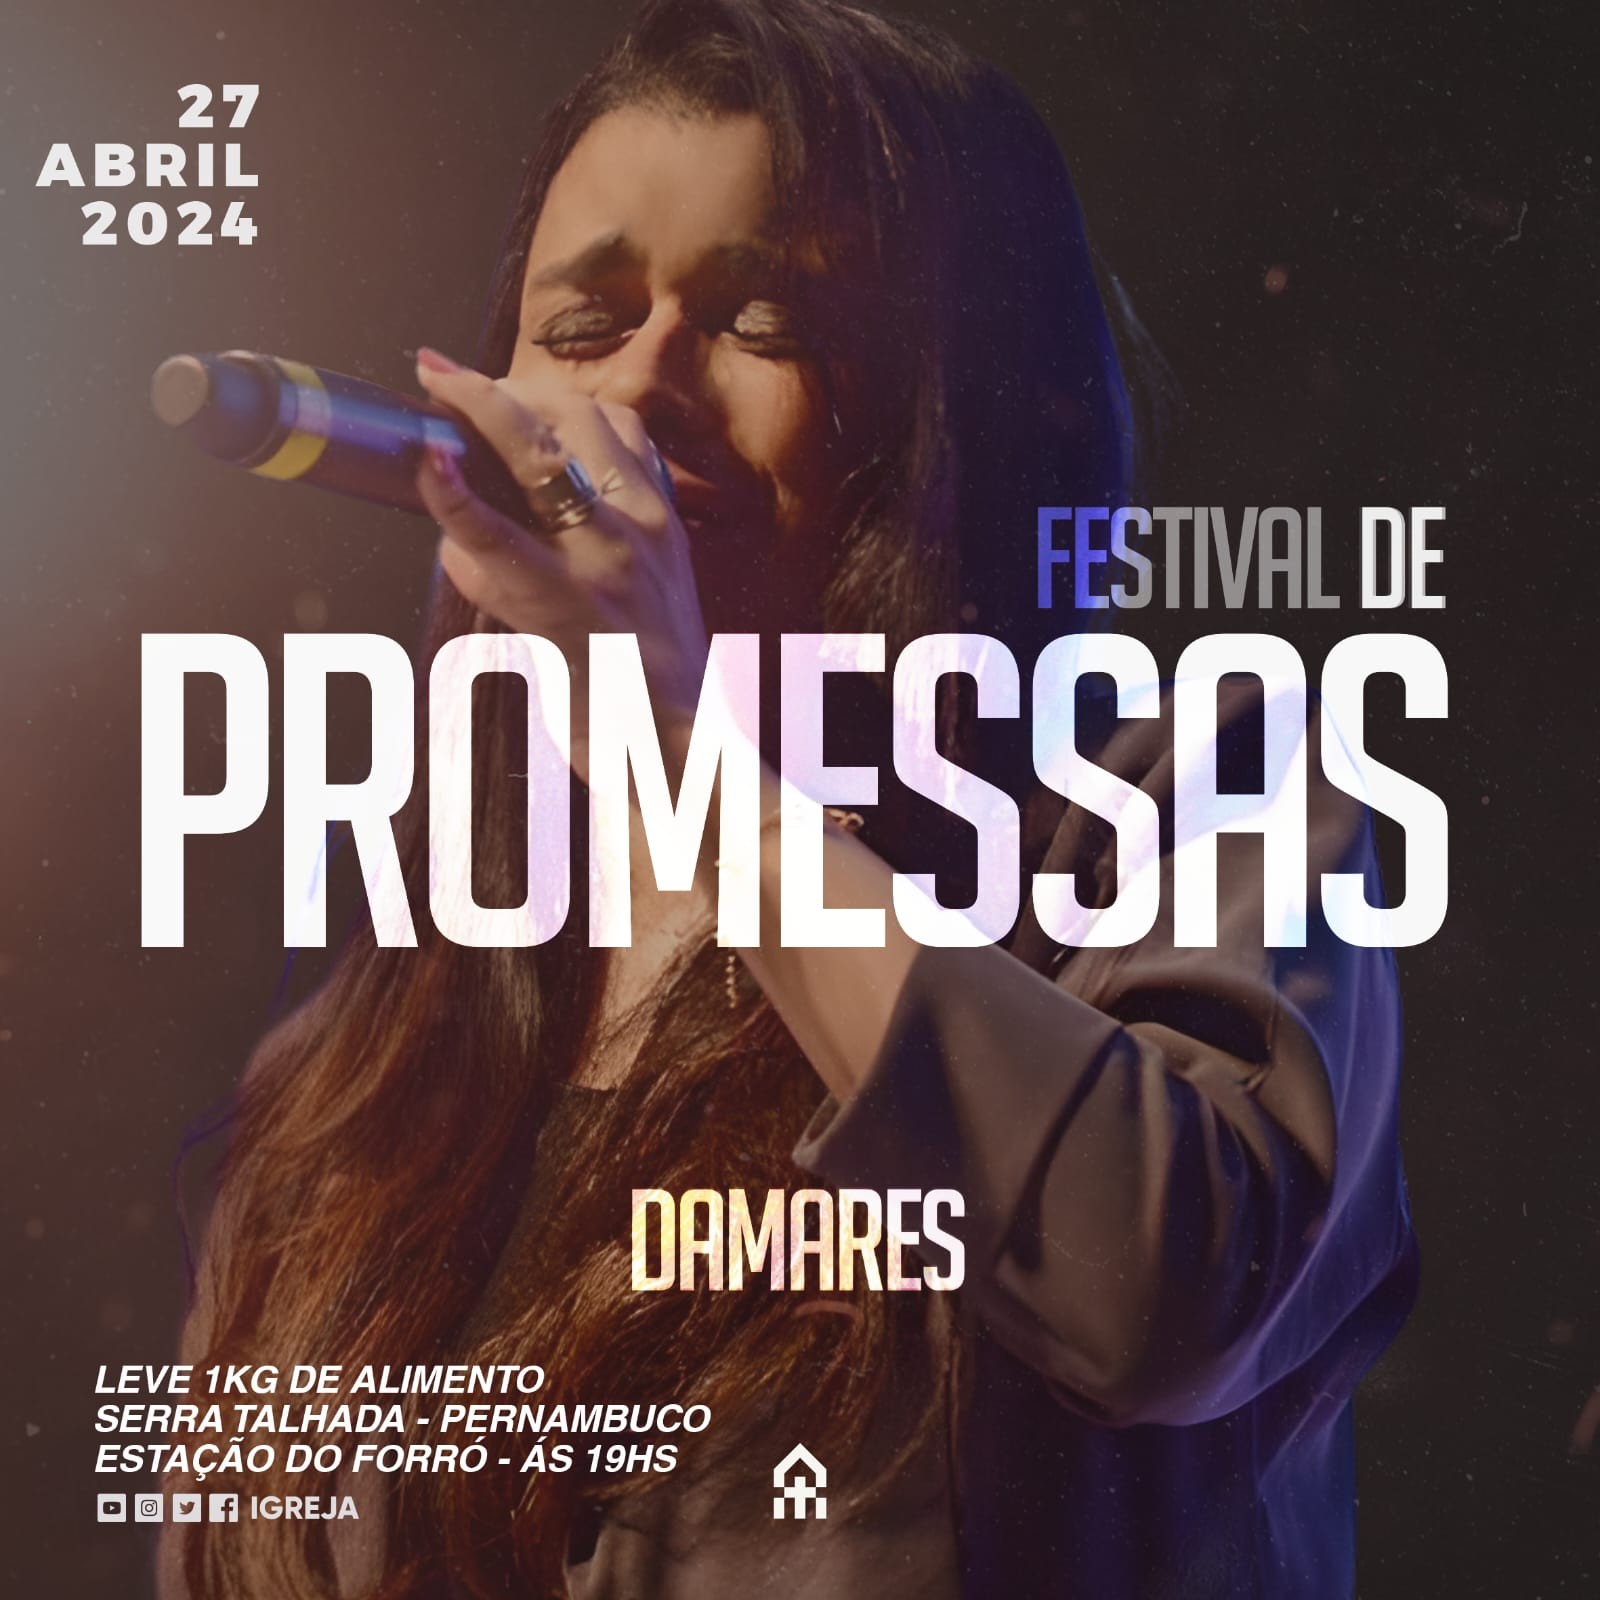 18º Festival de Promessas é realizado em Serra Talhada